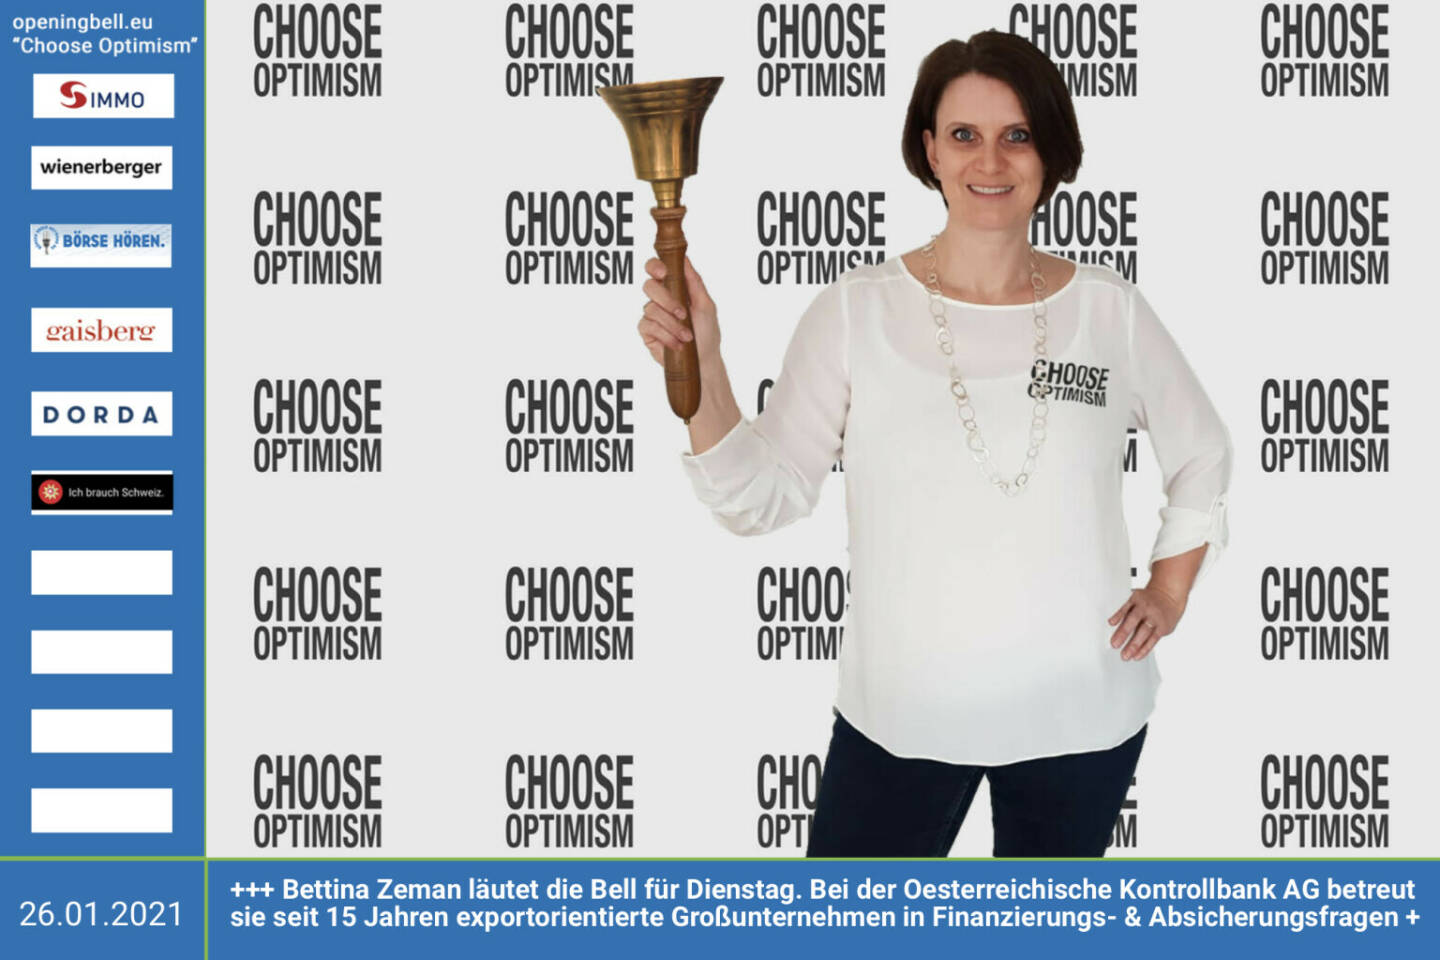 26.1.: Bettina Zeman läutet die Opening Bell für Dienstag. Bei der Oesterreichische Kontrollbank AG betreut sie seit 15 Jahren exportorientierte Großunternehmen in Finanzierungs- und Absicherungsfragen http://www.oekb.at - mehr Choose Optimism: https://boerse-social.com/category/choose_optimism  https://www.facebook.com/chooseoptimism/